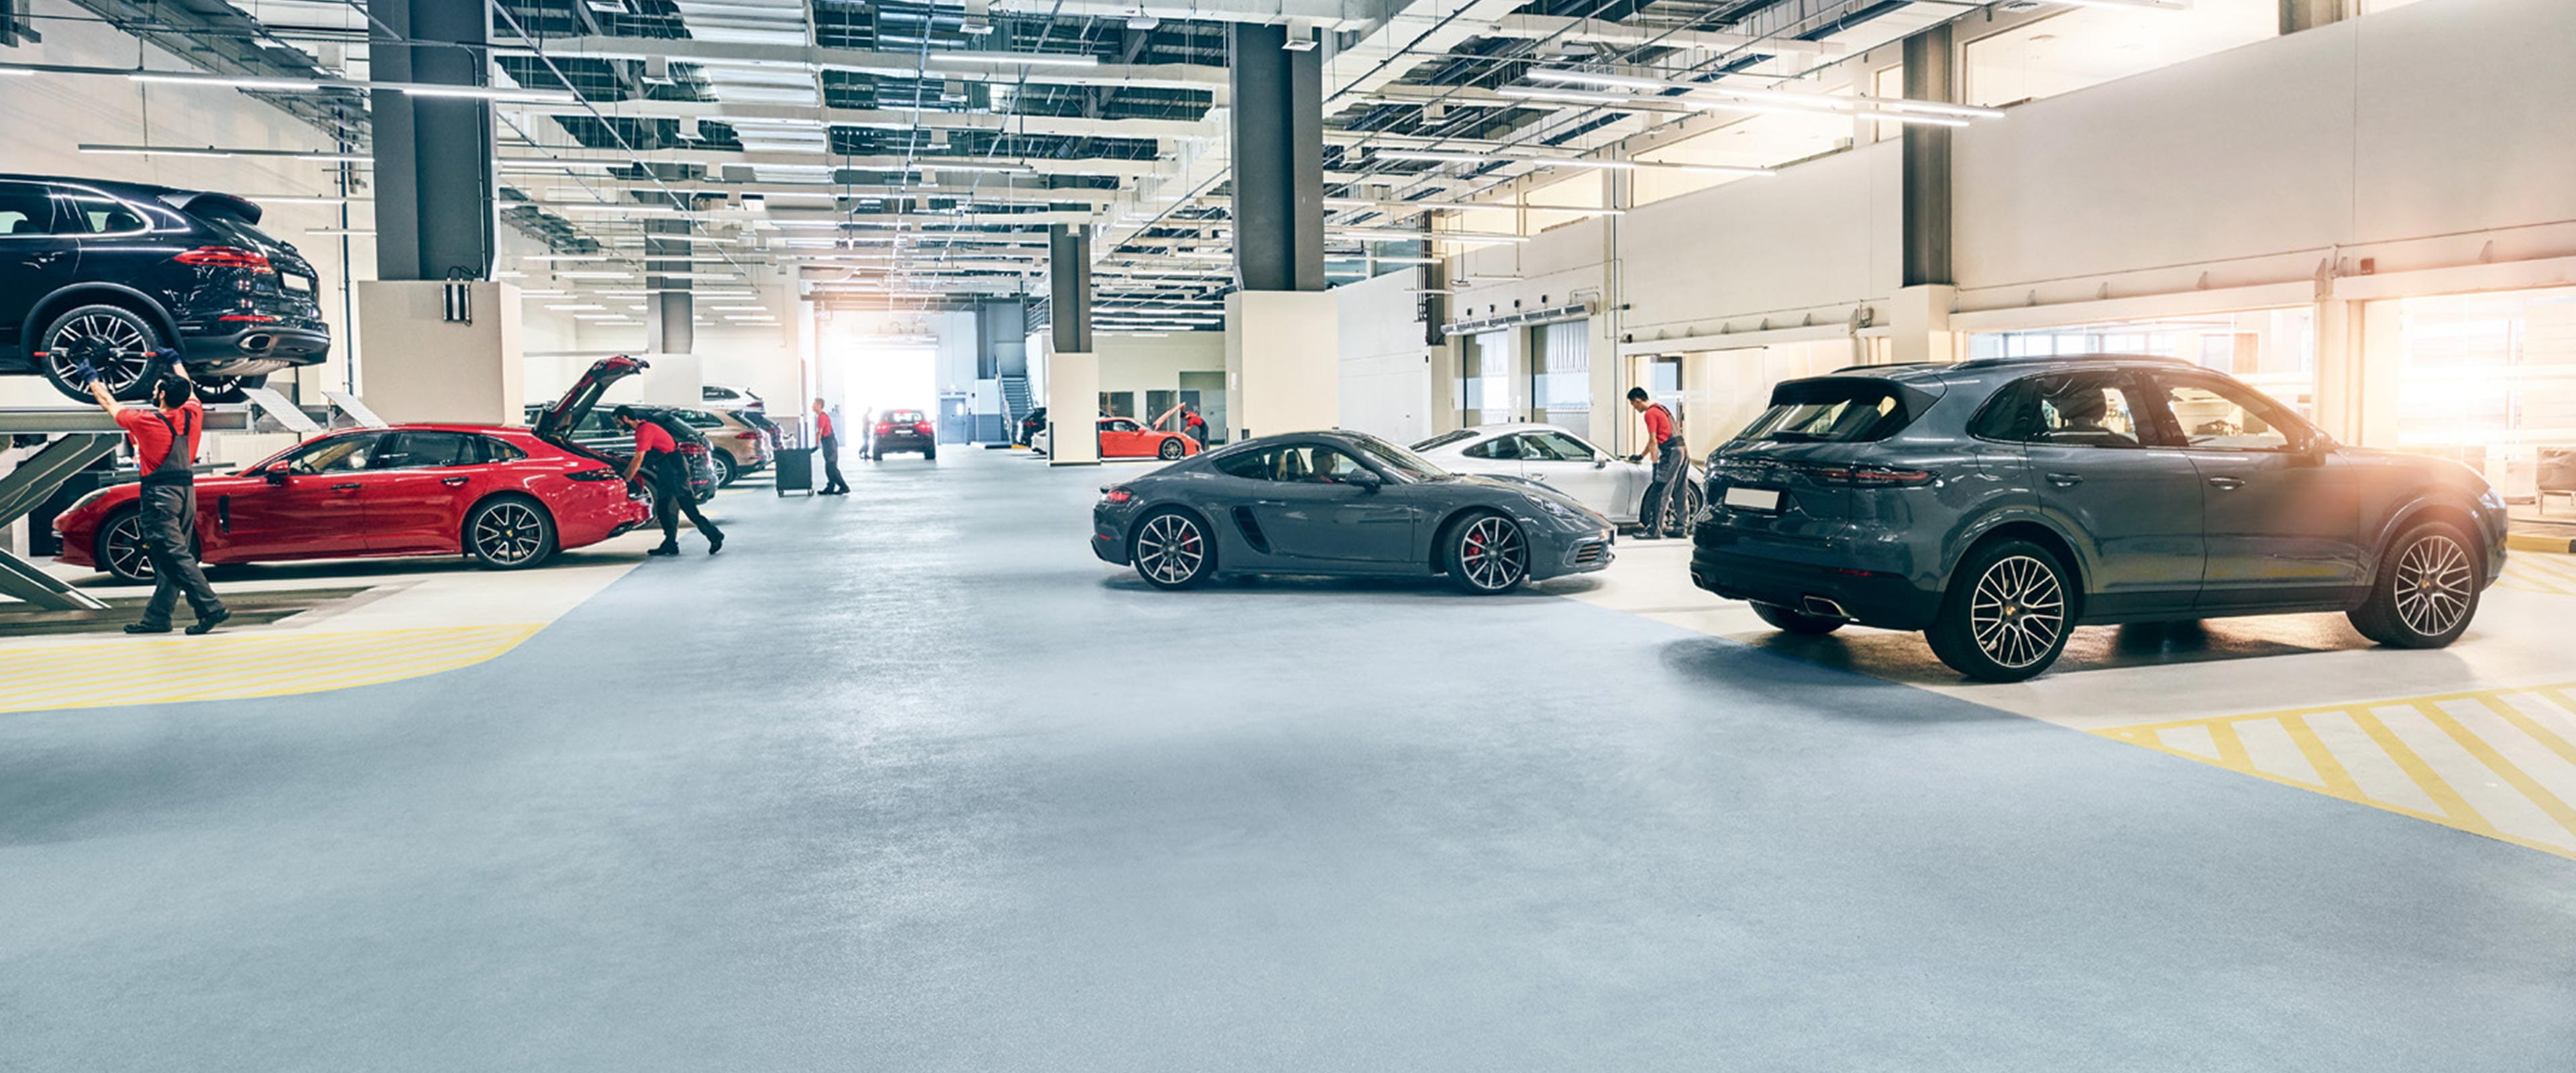 Salle d'exposition du concessionnaire automobile Porsche Inter